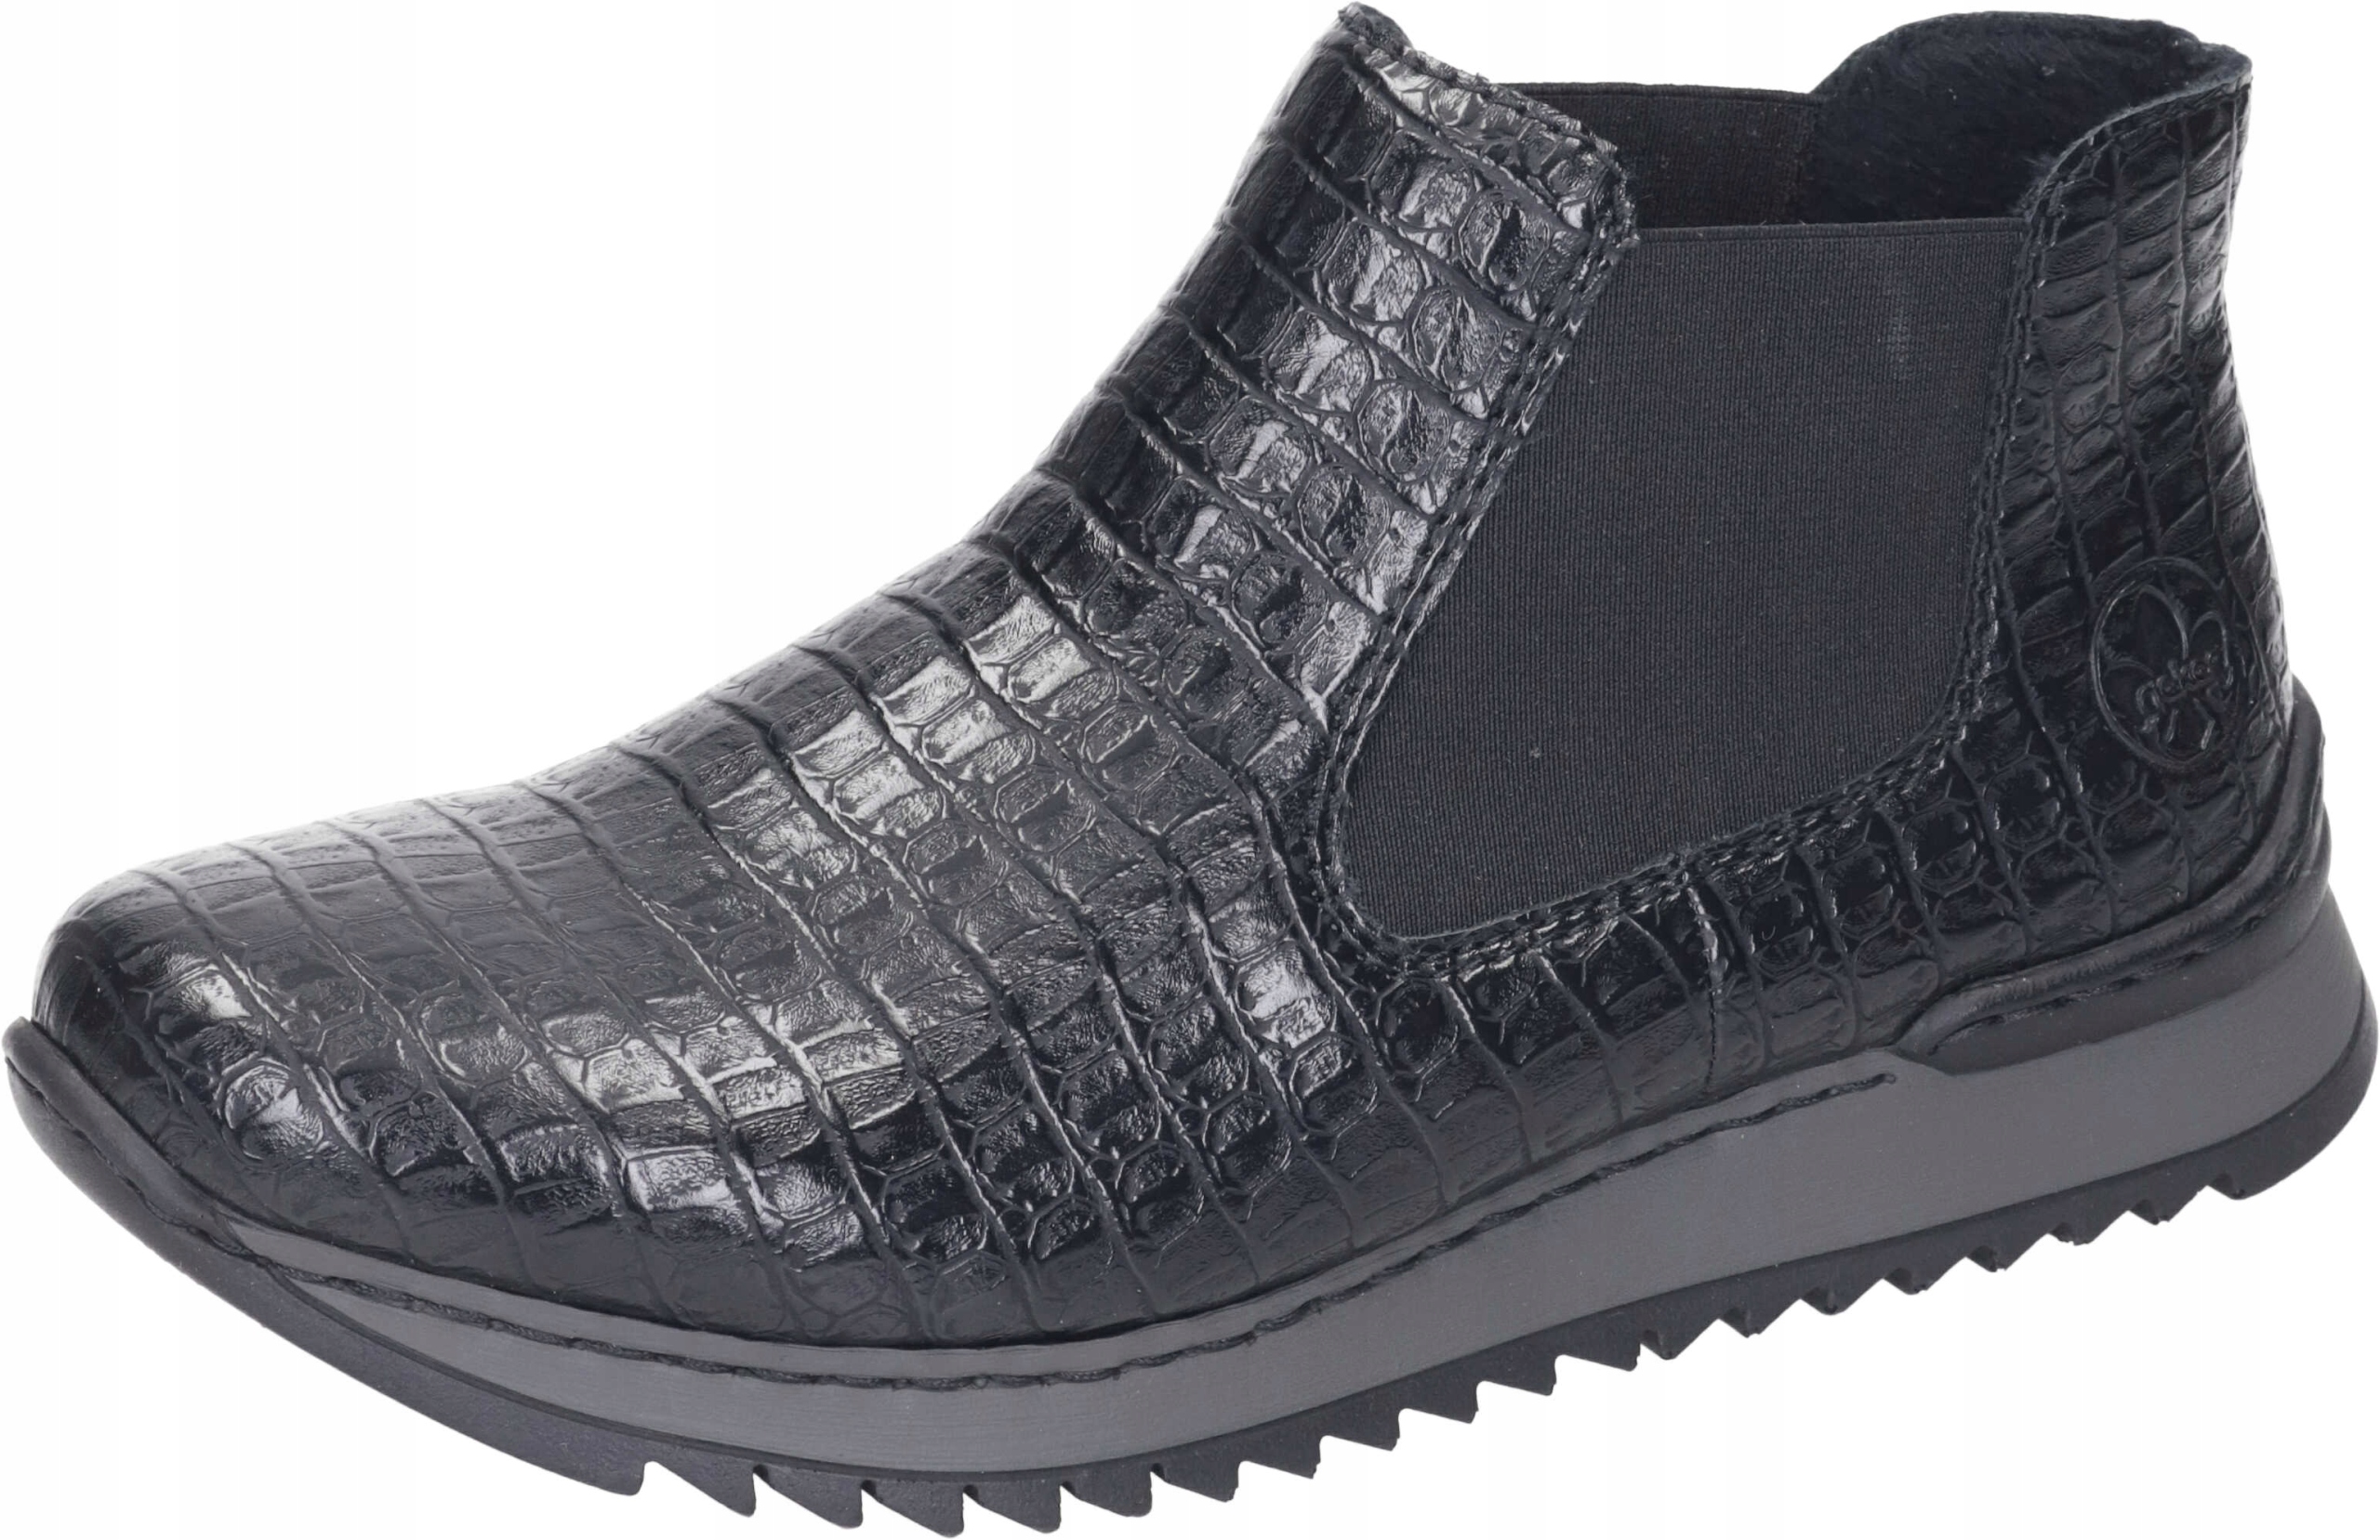 RIEKER čierne topánky, čižmy, dámske činky M3691